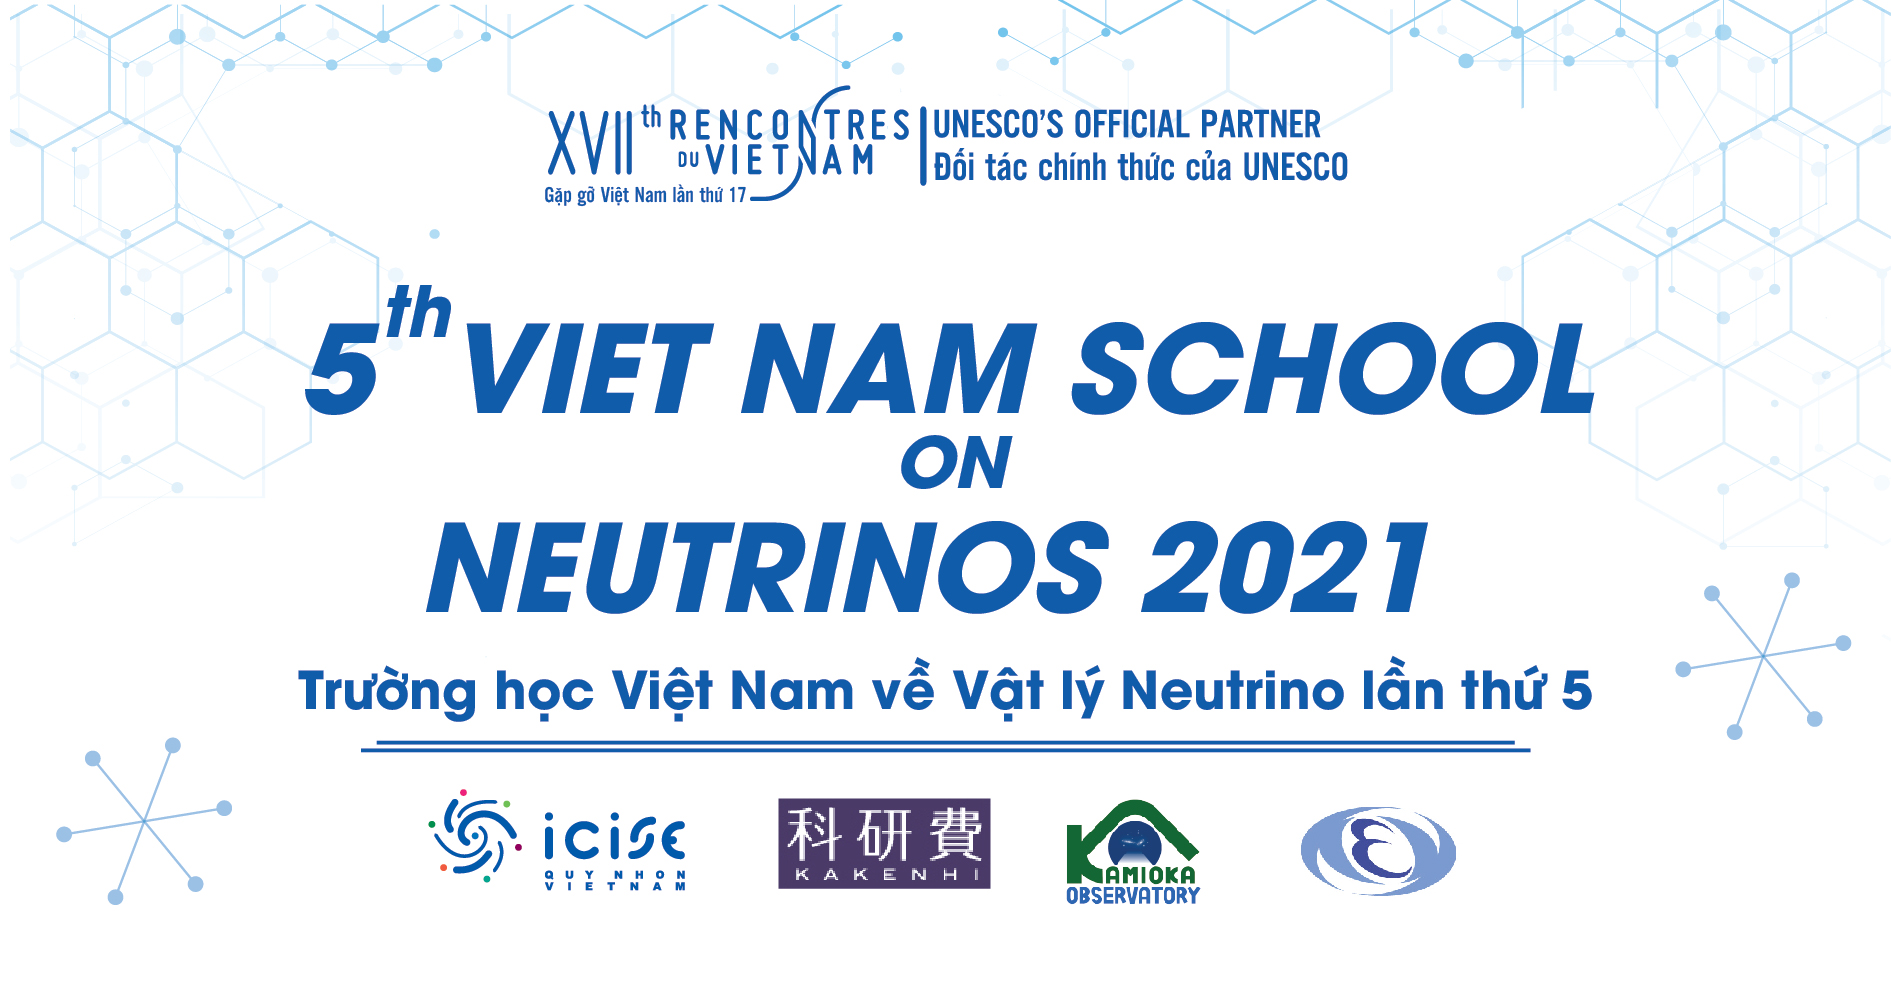 Quy Nhon et son nouveau centre pour découvrir les sciences - Le Courrier du VietNam